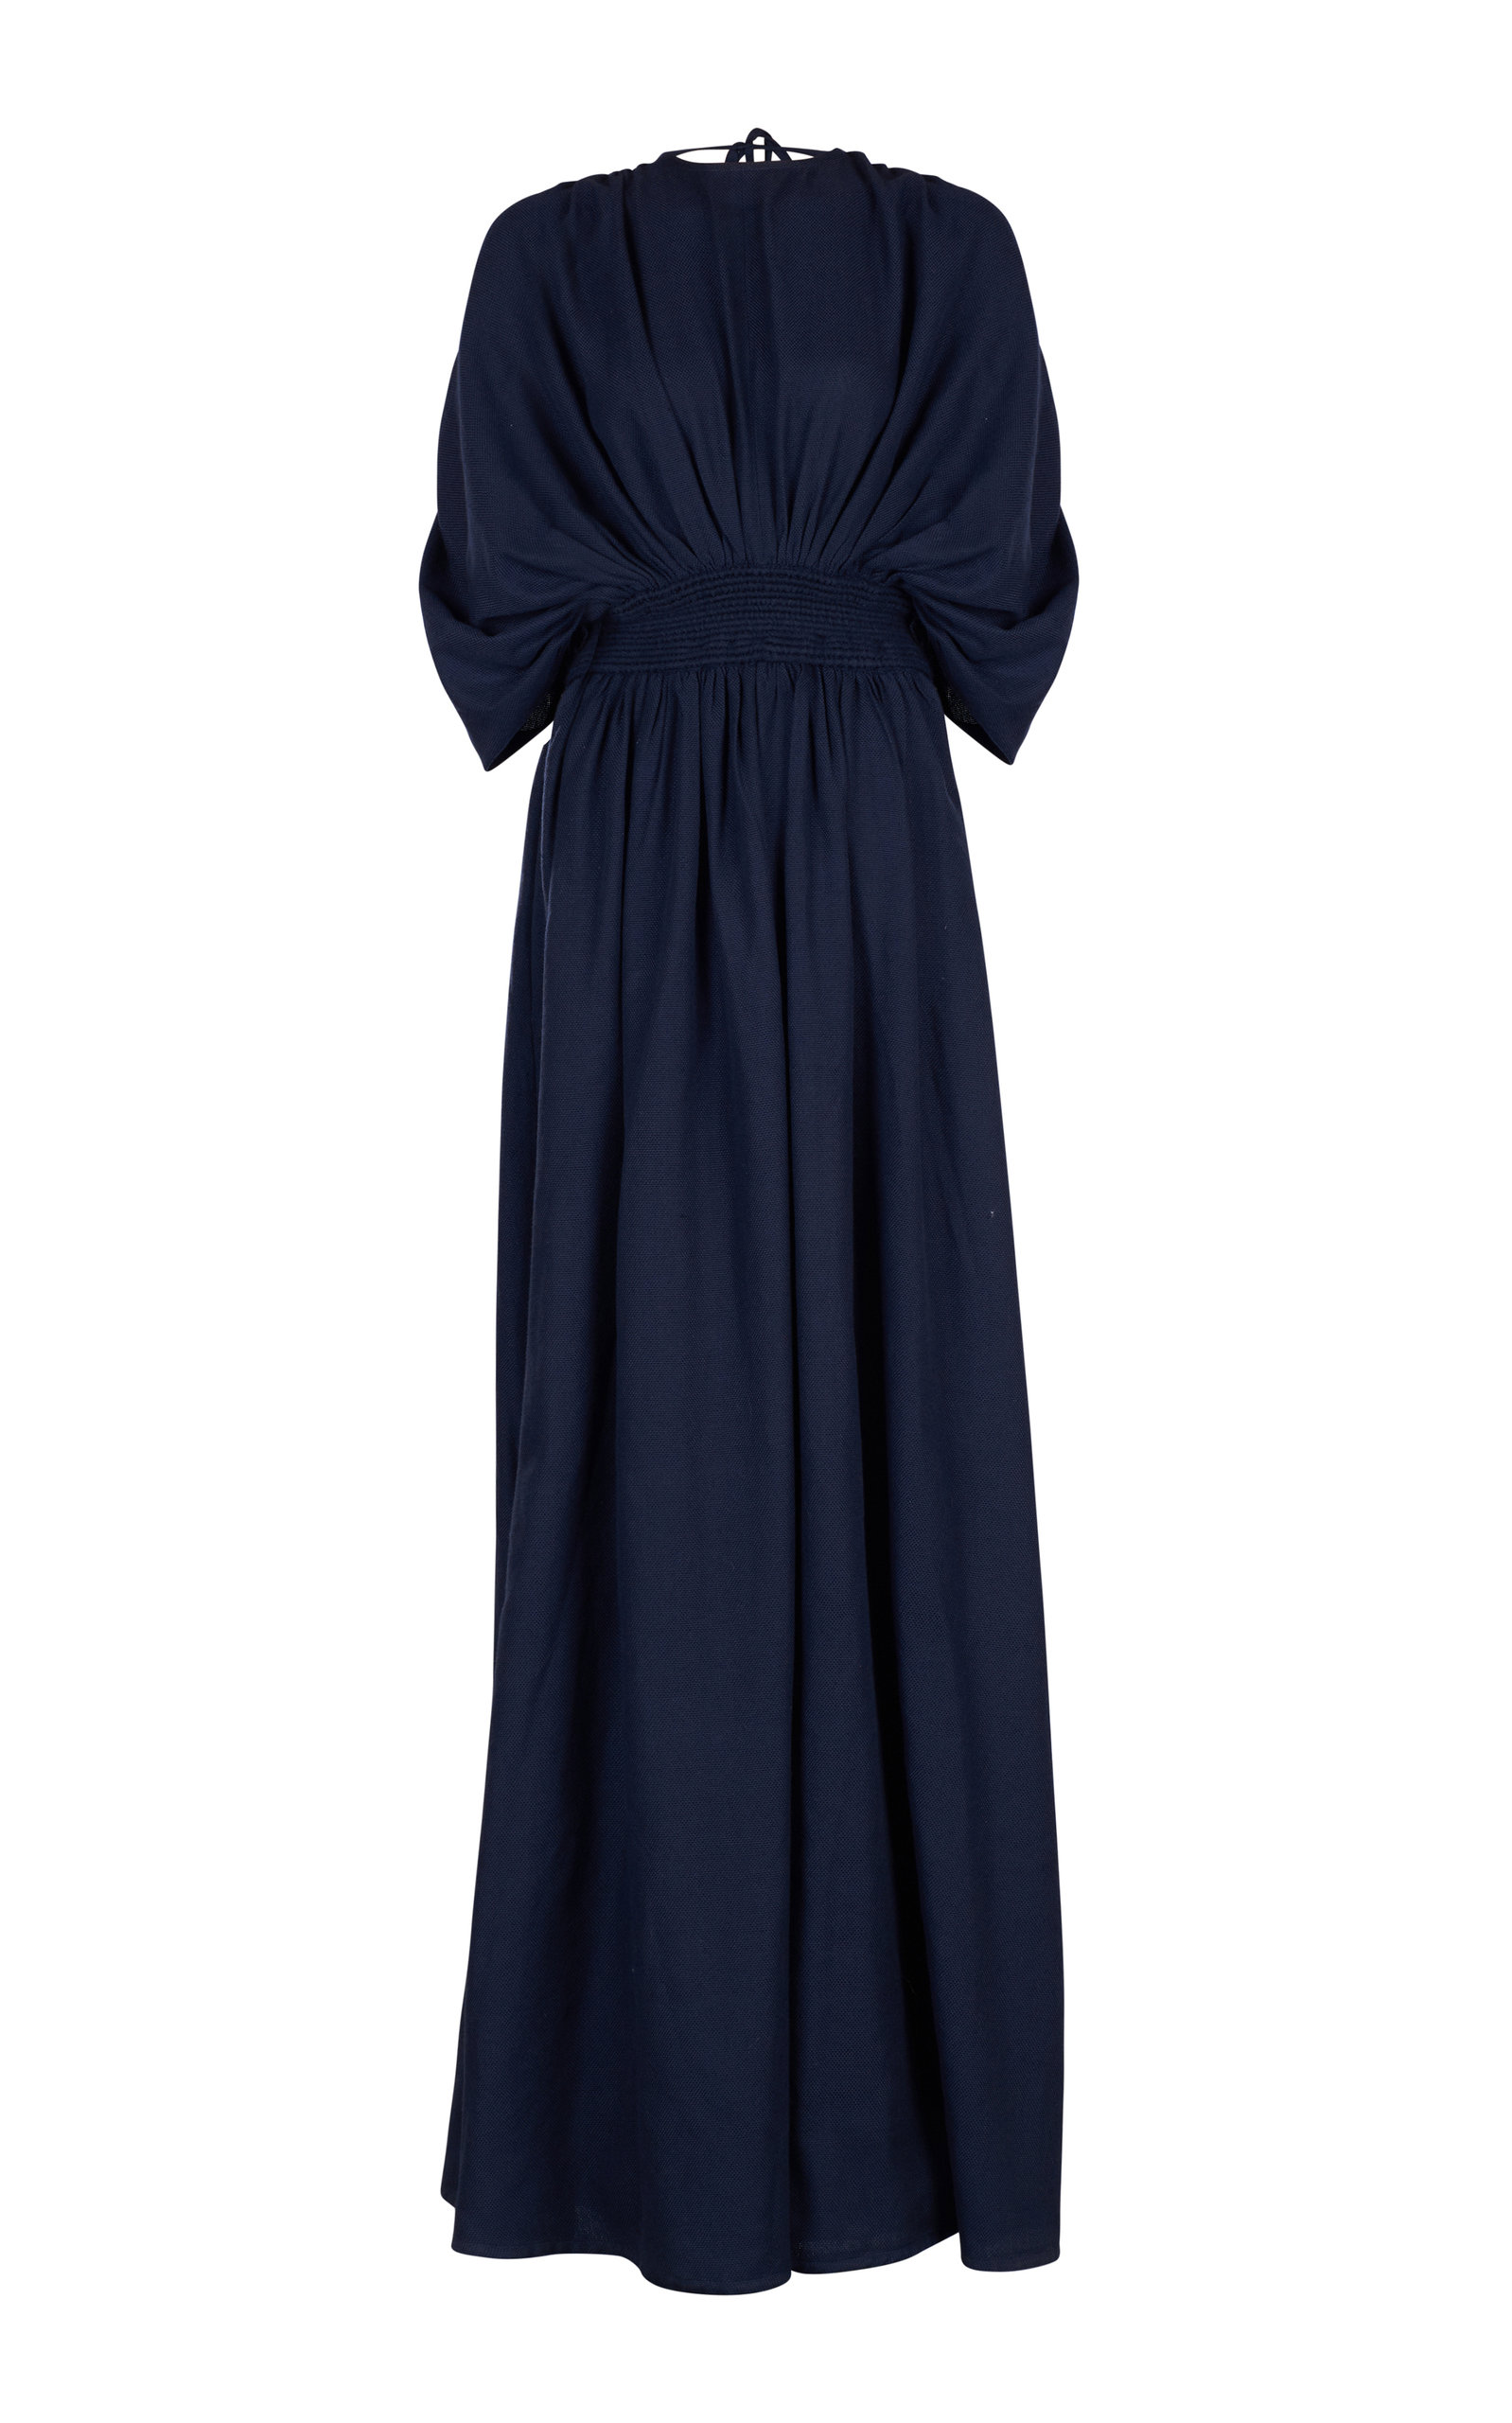 Escvdo - Women's Lisa Handwoven Cotton Maxi Dress - Navy - Moda Operandi